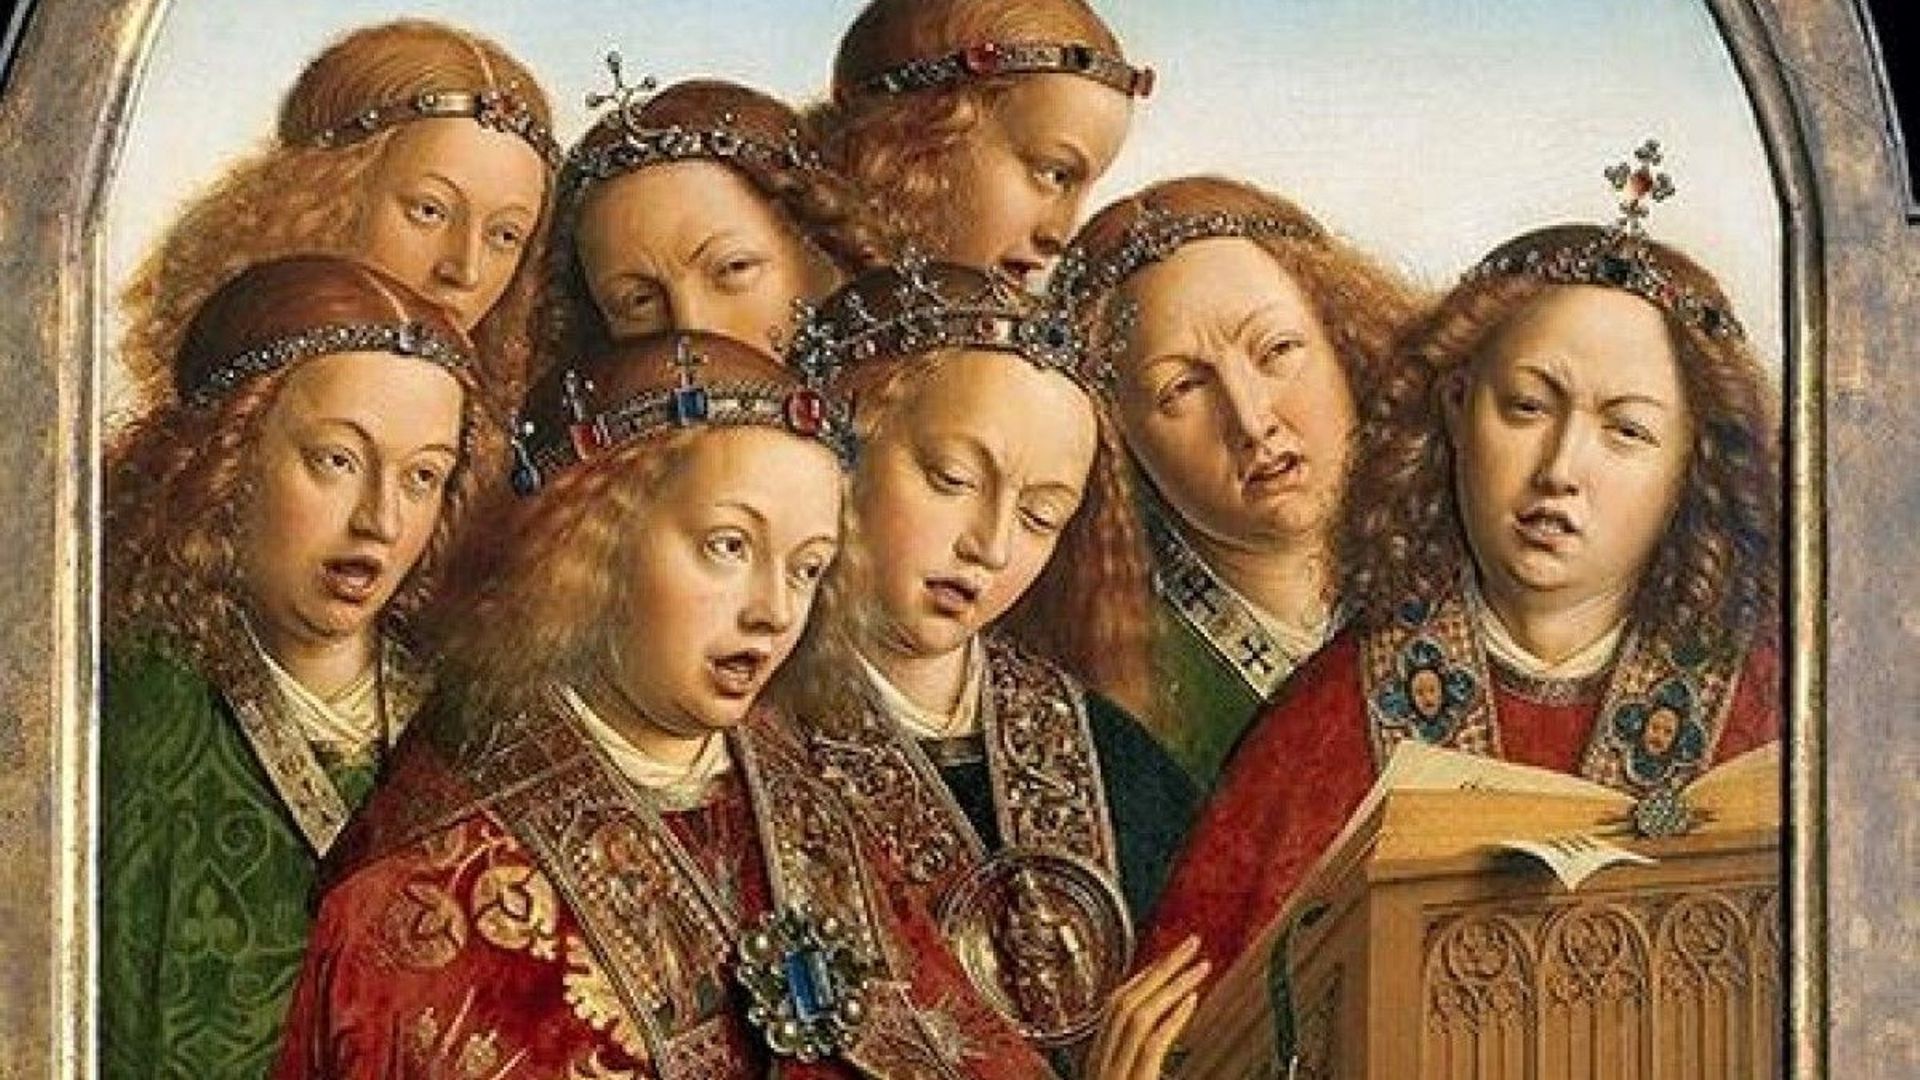 Jan Van Eyck, "Les anges chanteurs"